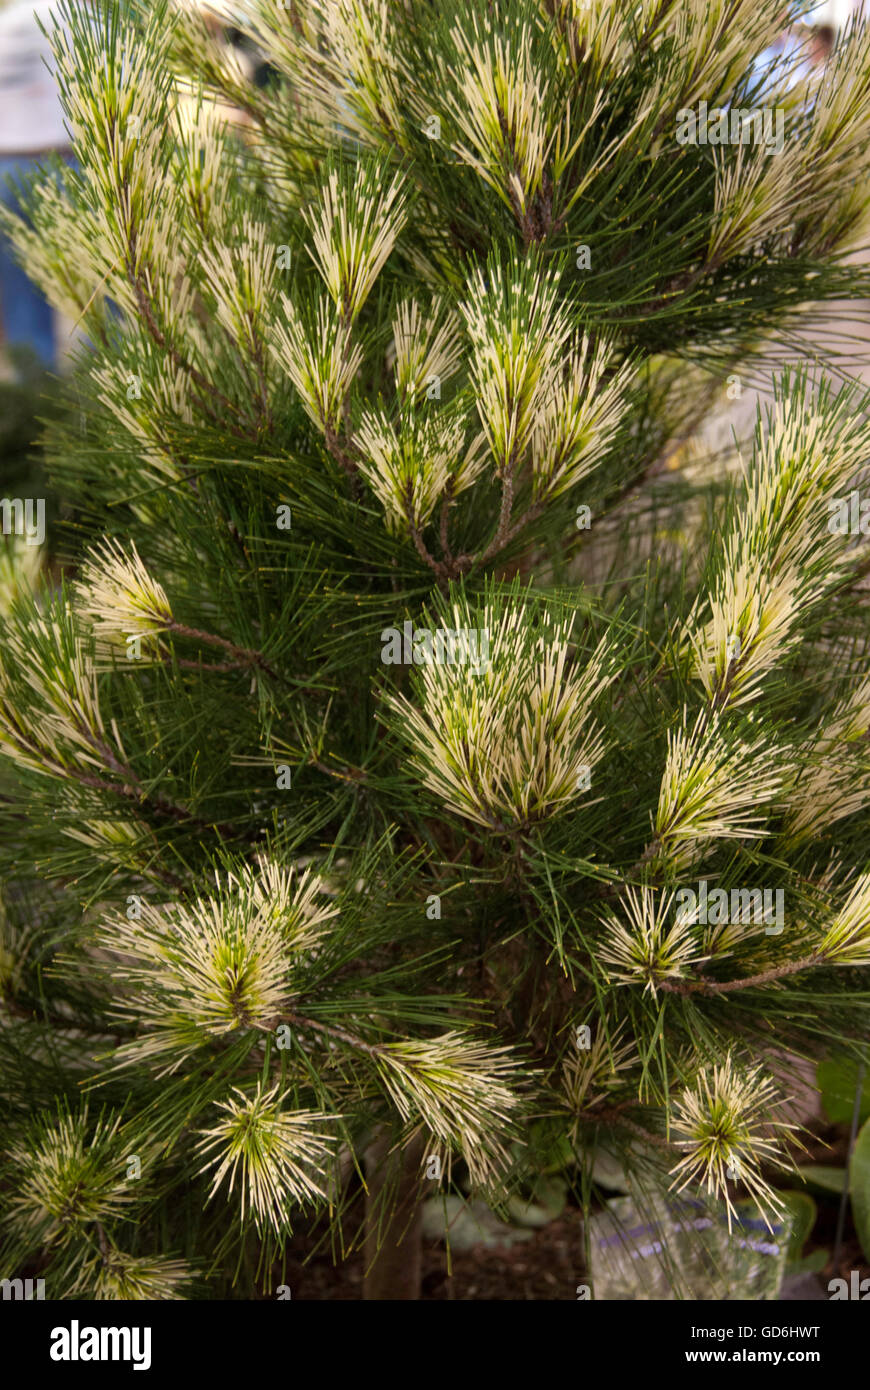 Pinus densiflora 'Oculus draconis'., Dragon's Eye Pine Stock Photo